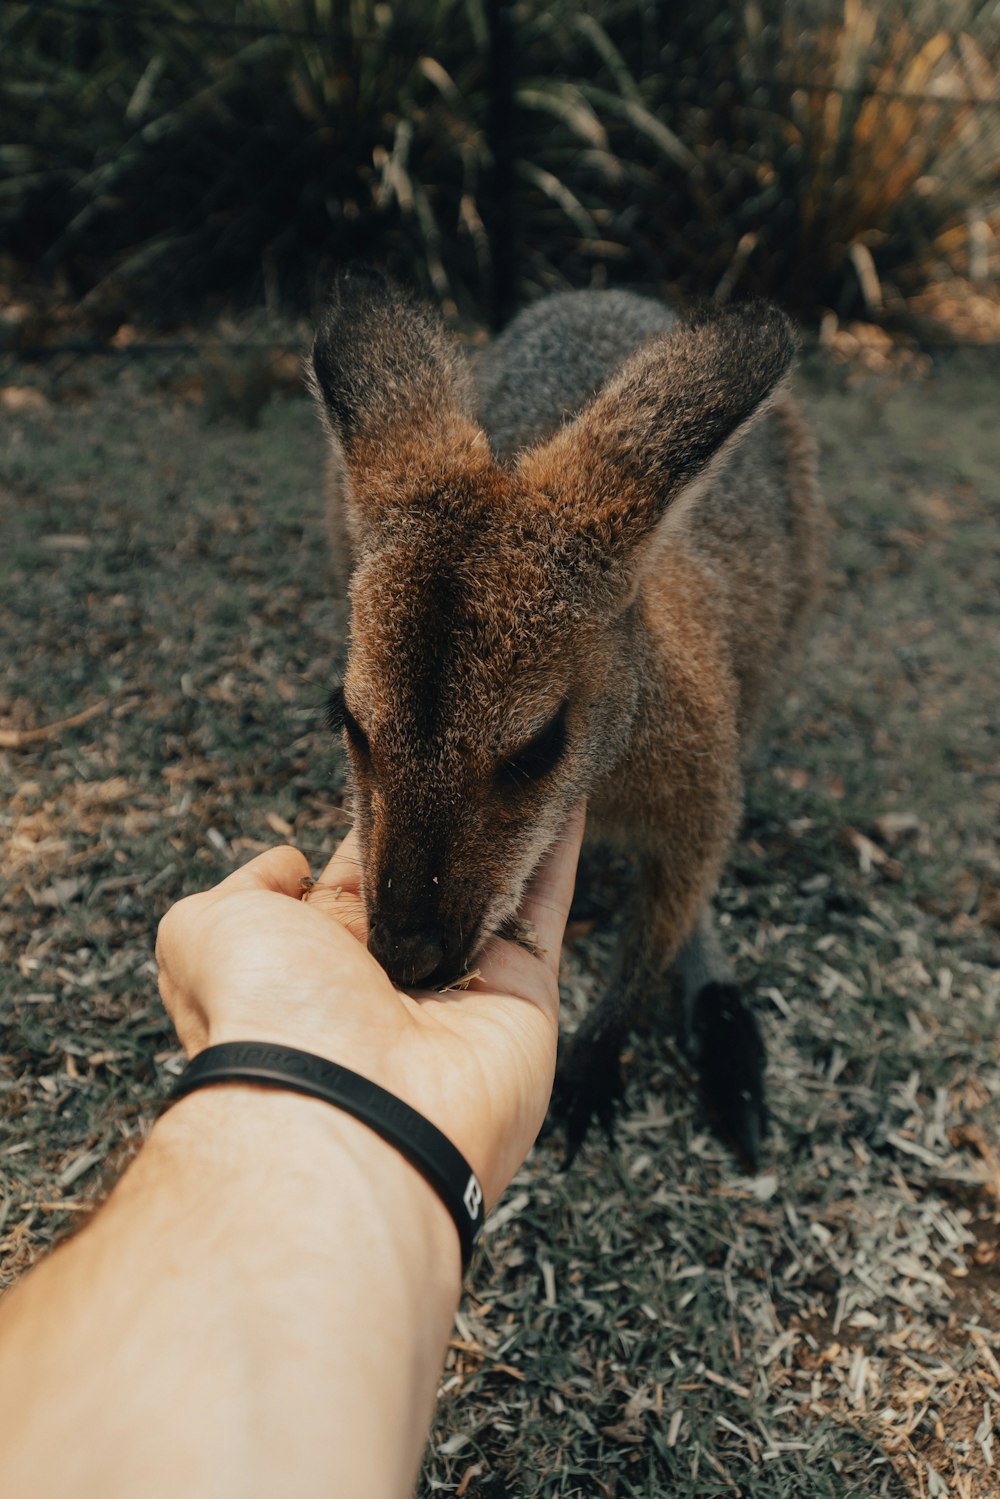 brown kangaroo on brown ground during daytime